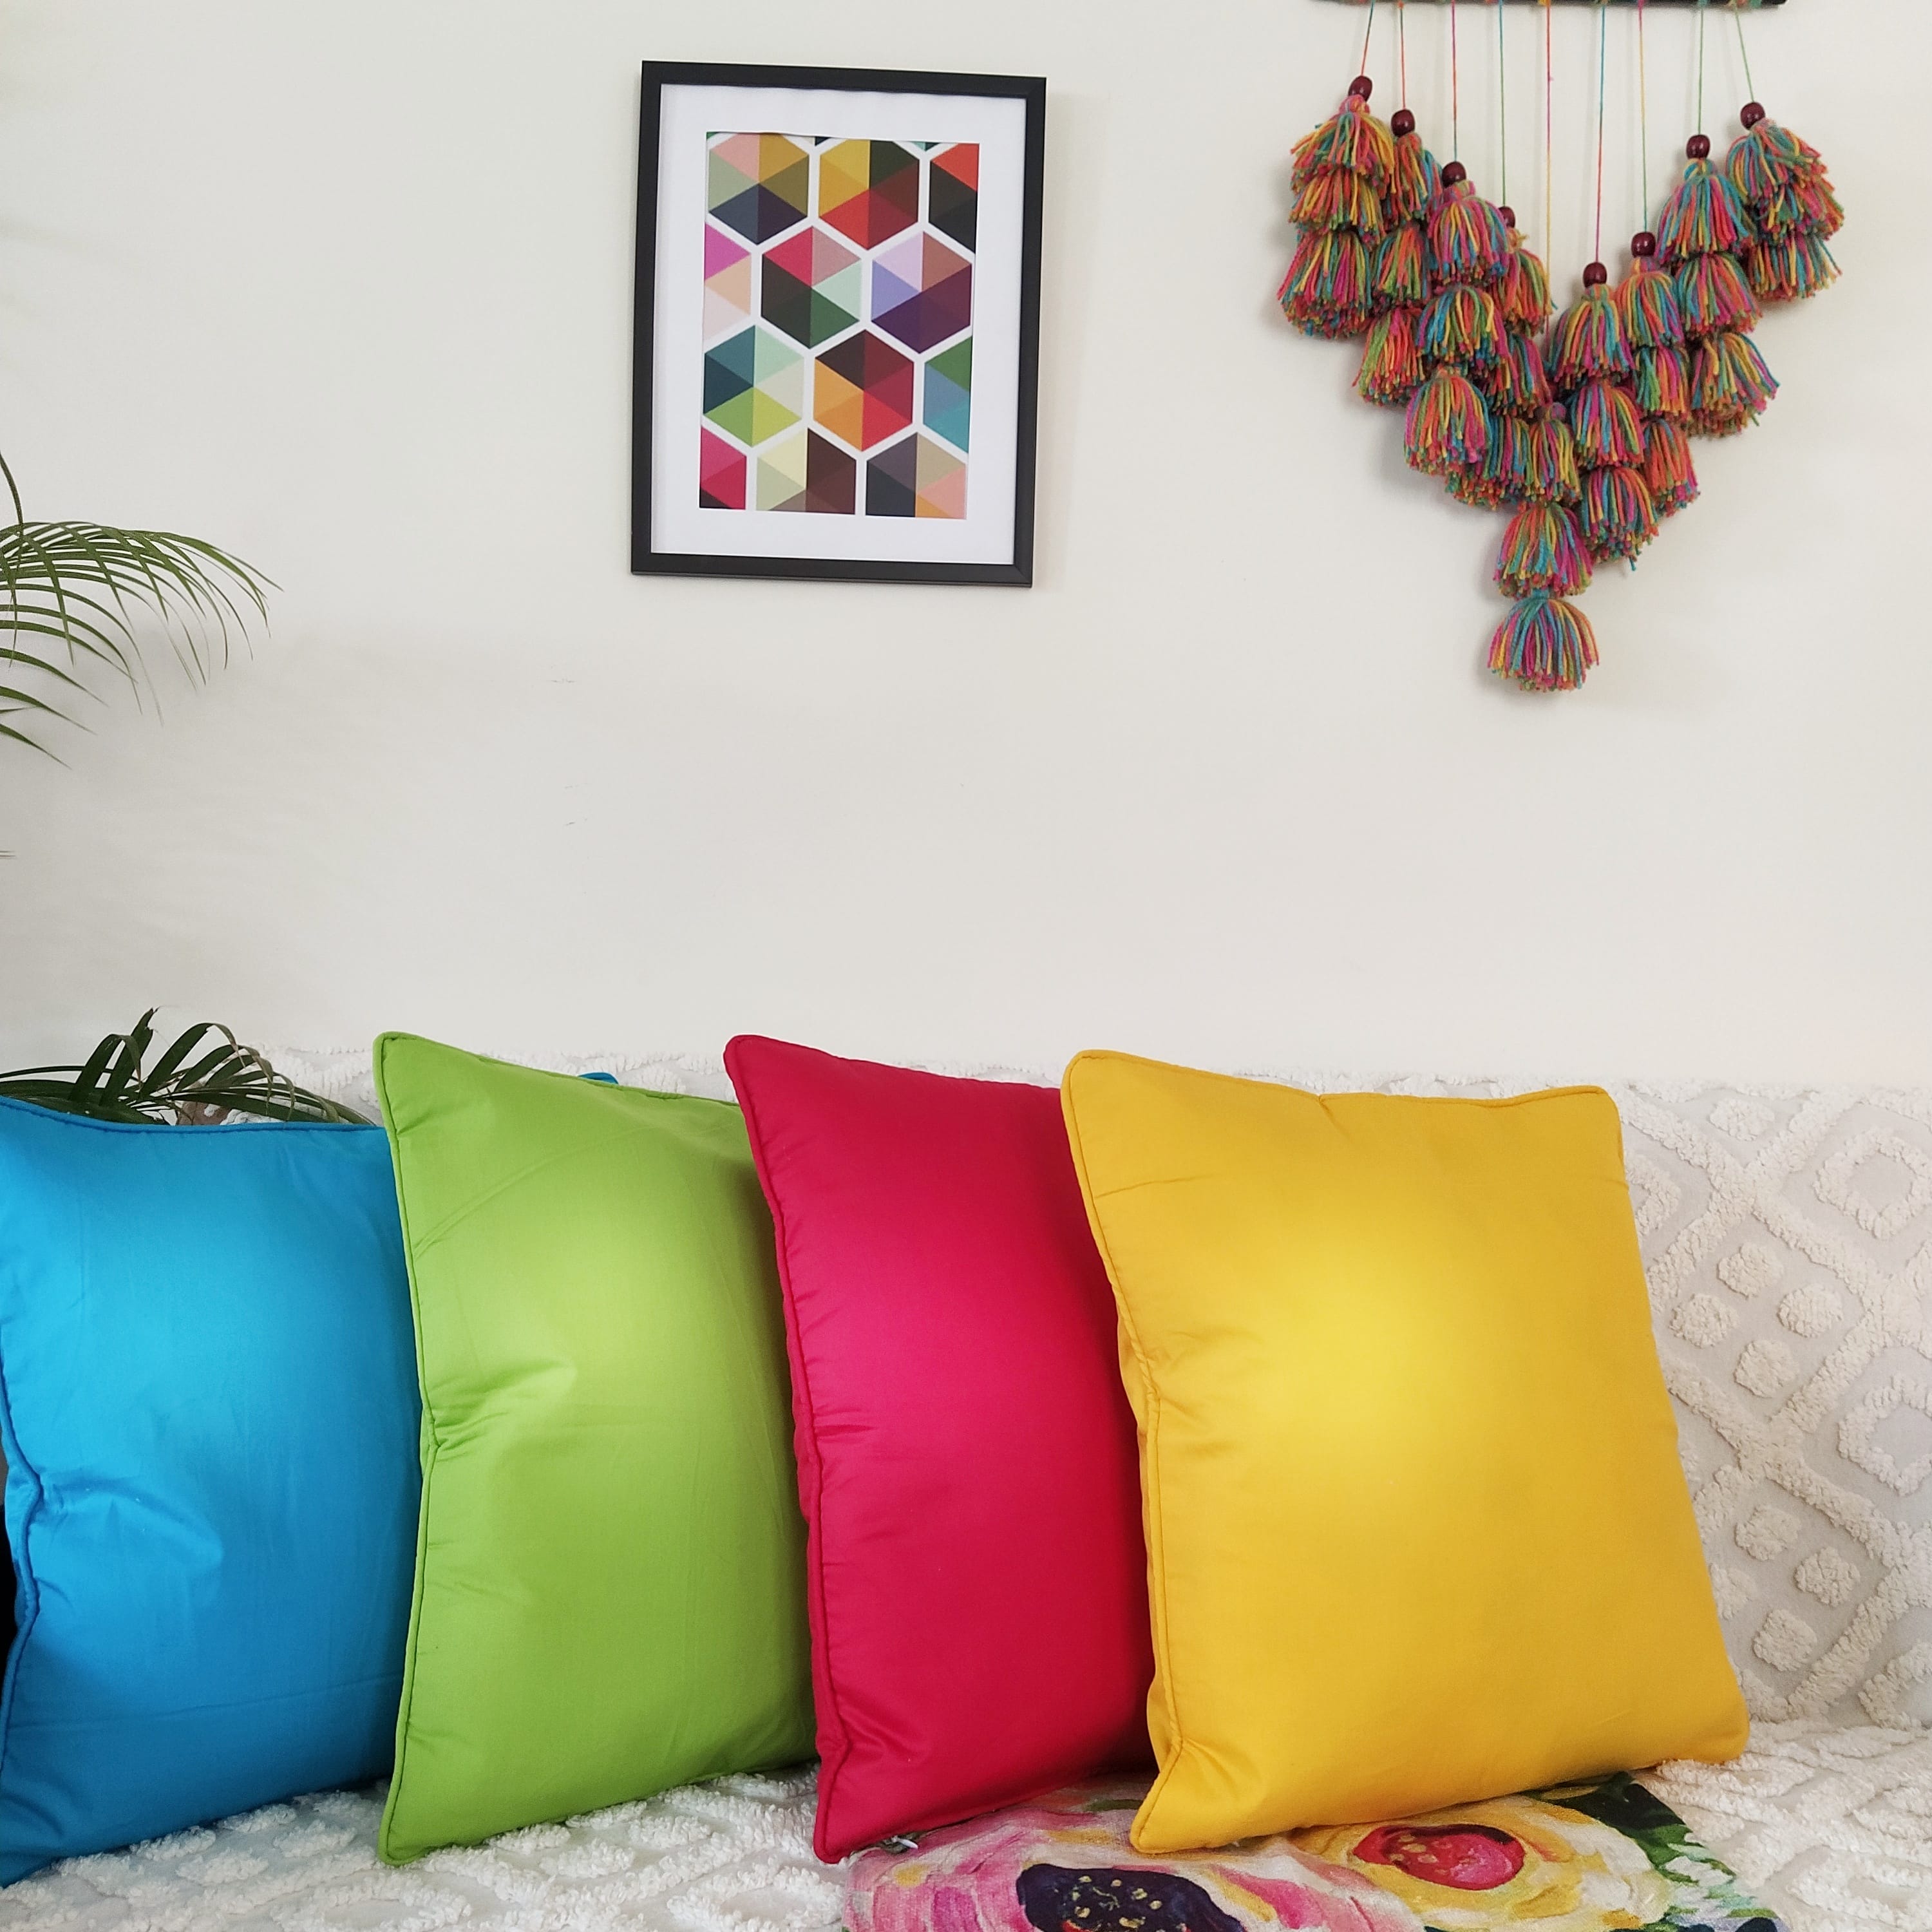 Plain Cotton Decorative Cushion Cover 7 Pcs online at best prices